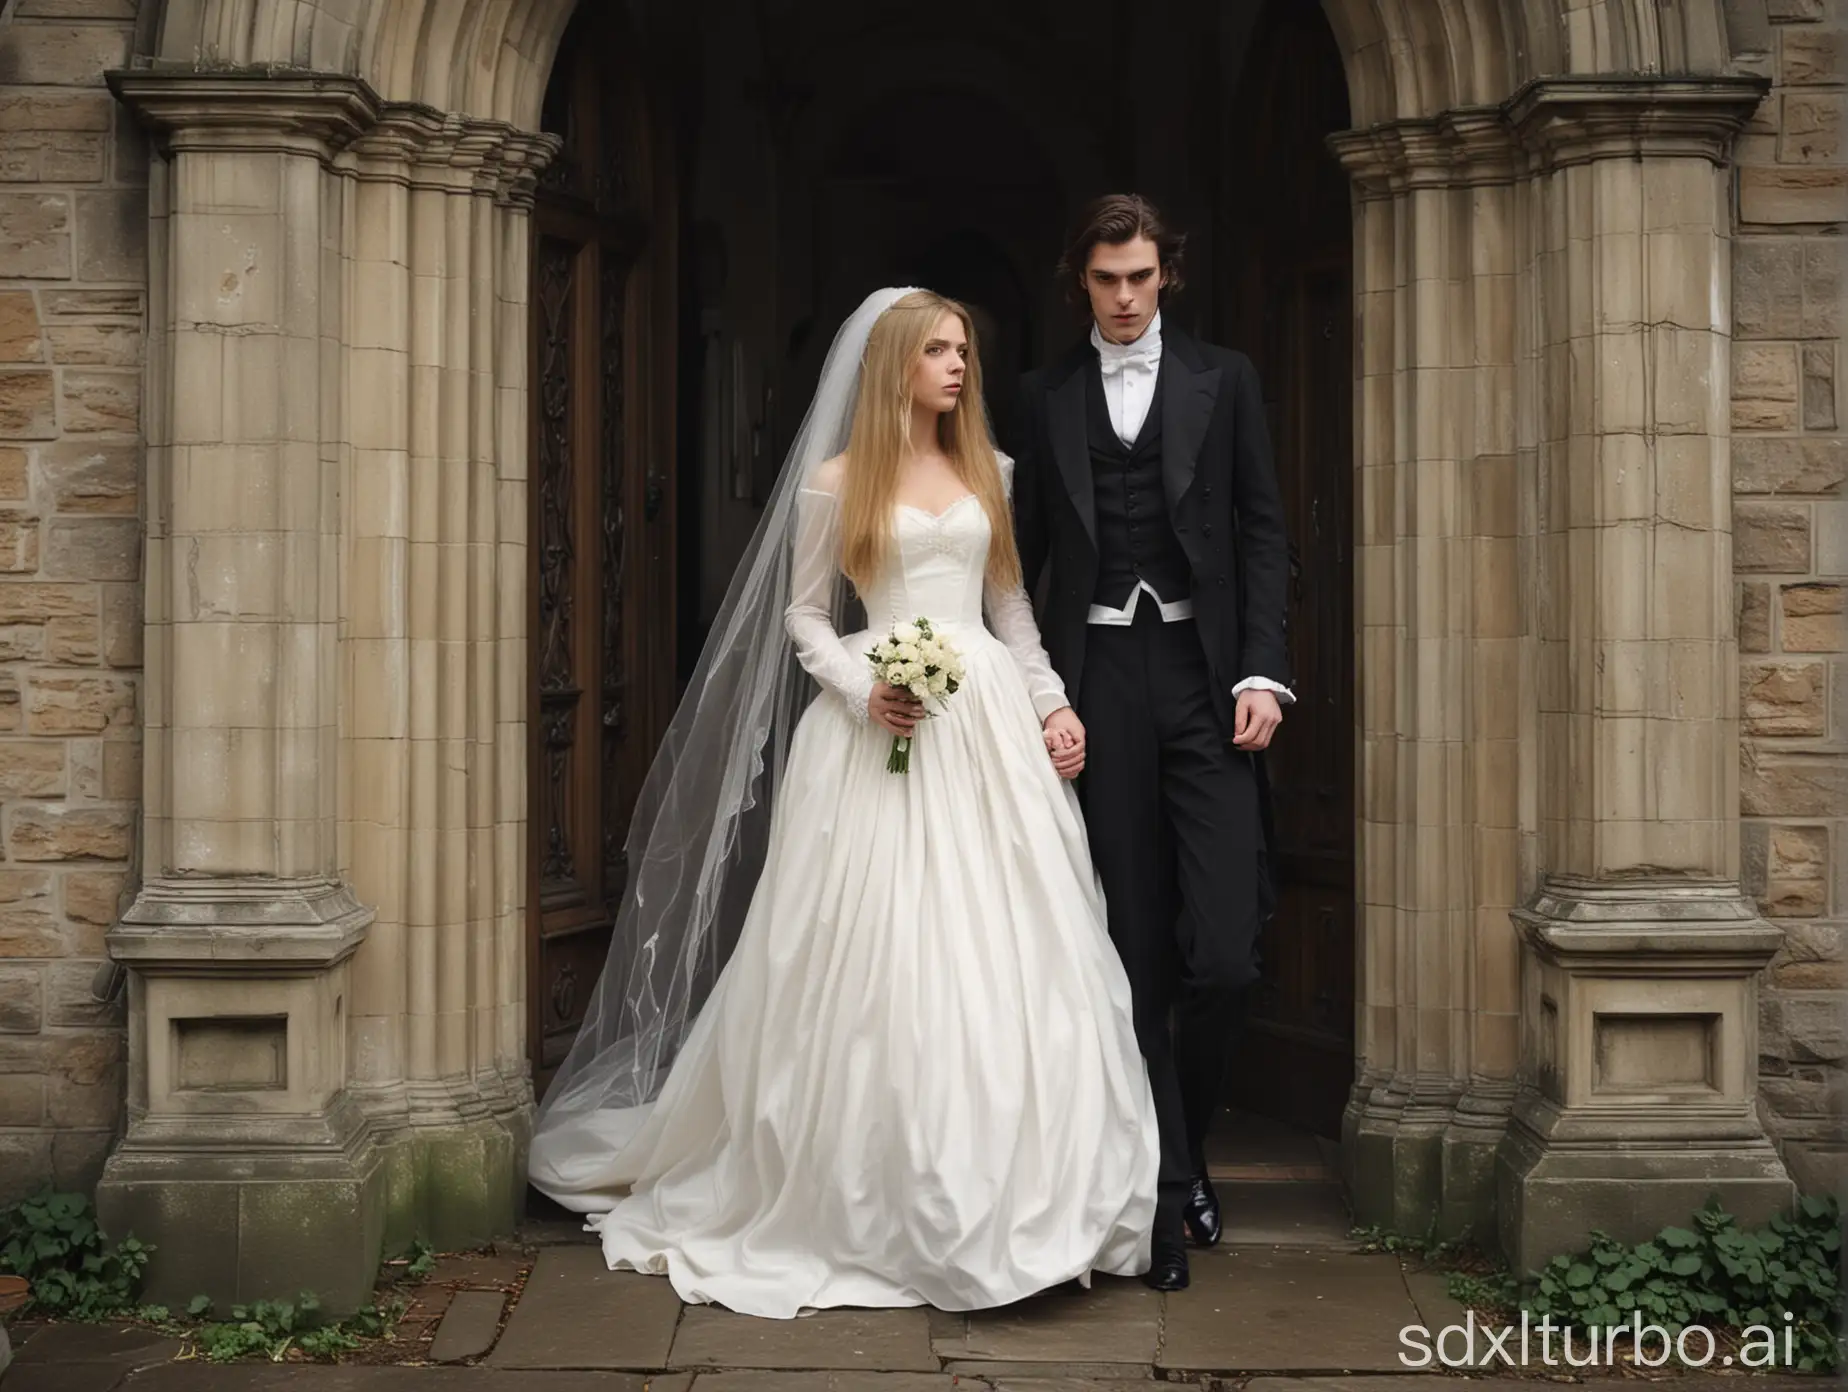 Victorian-Era-Wedding-Elegant-Groom-and-Shy-Bride-Exiting-Church-in-Rain